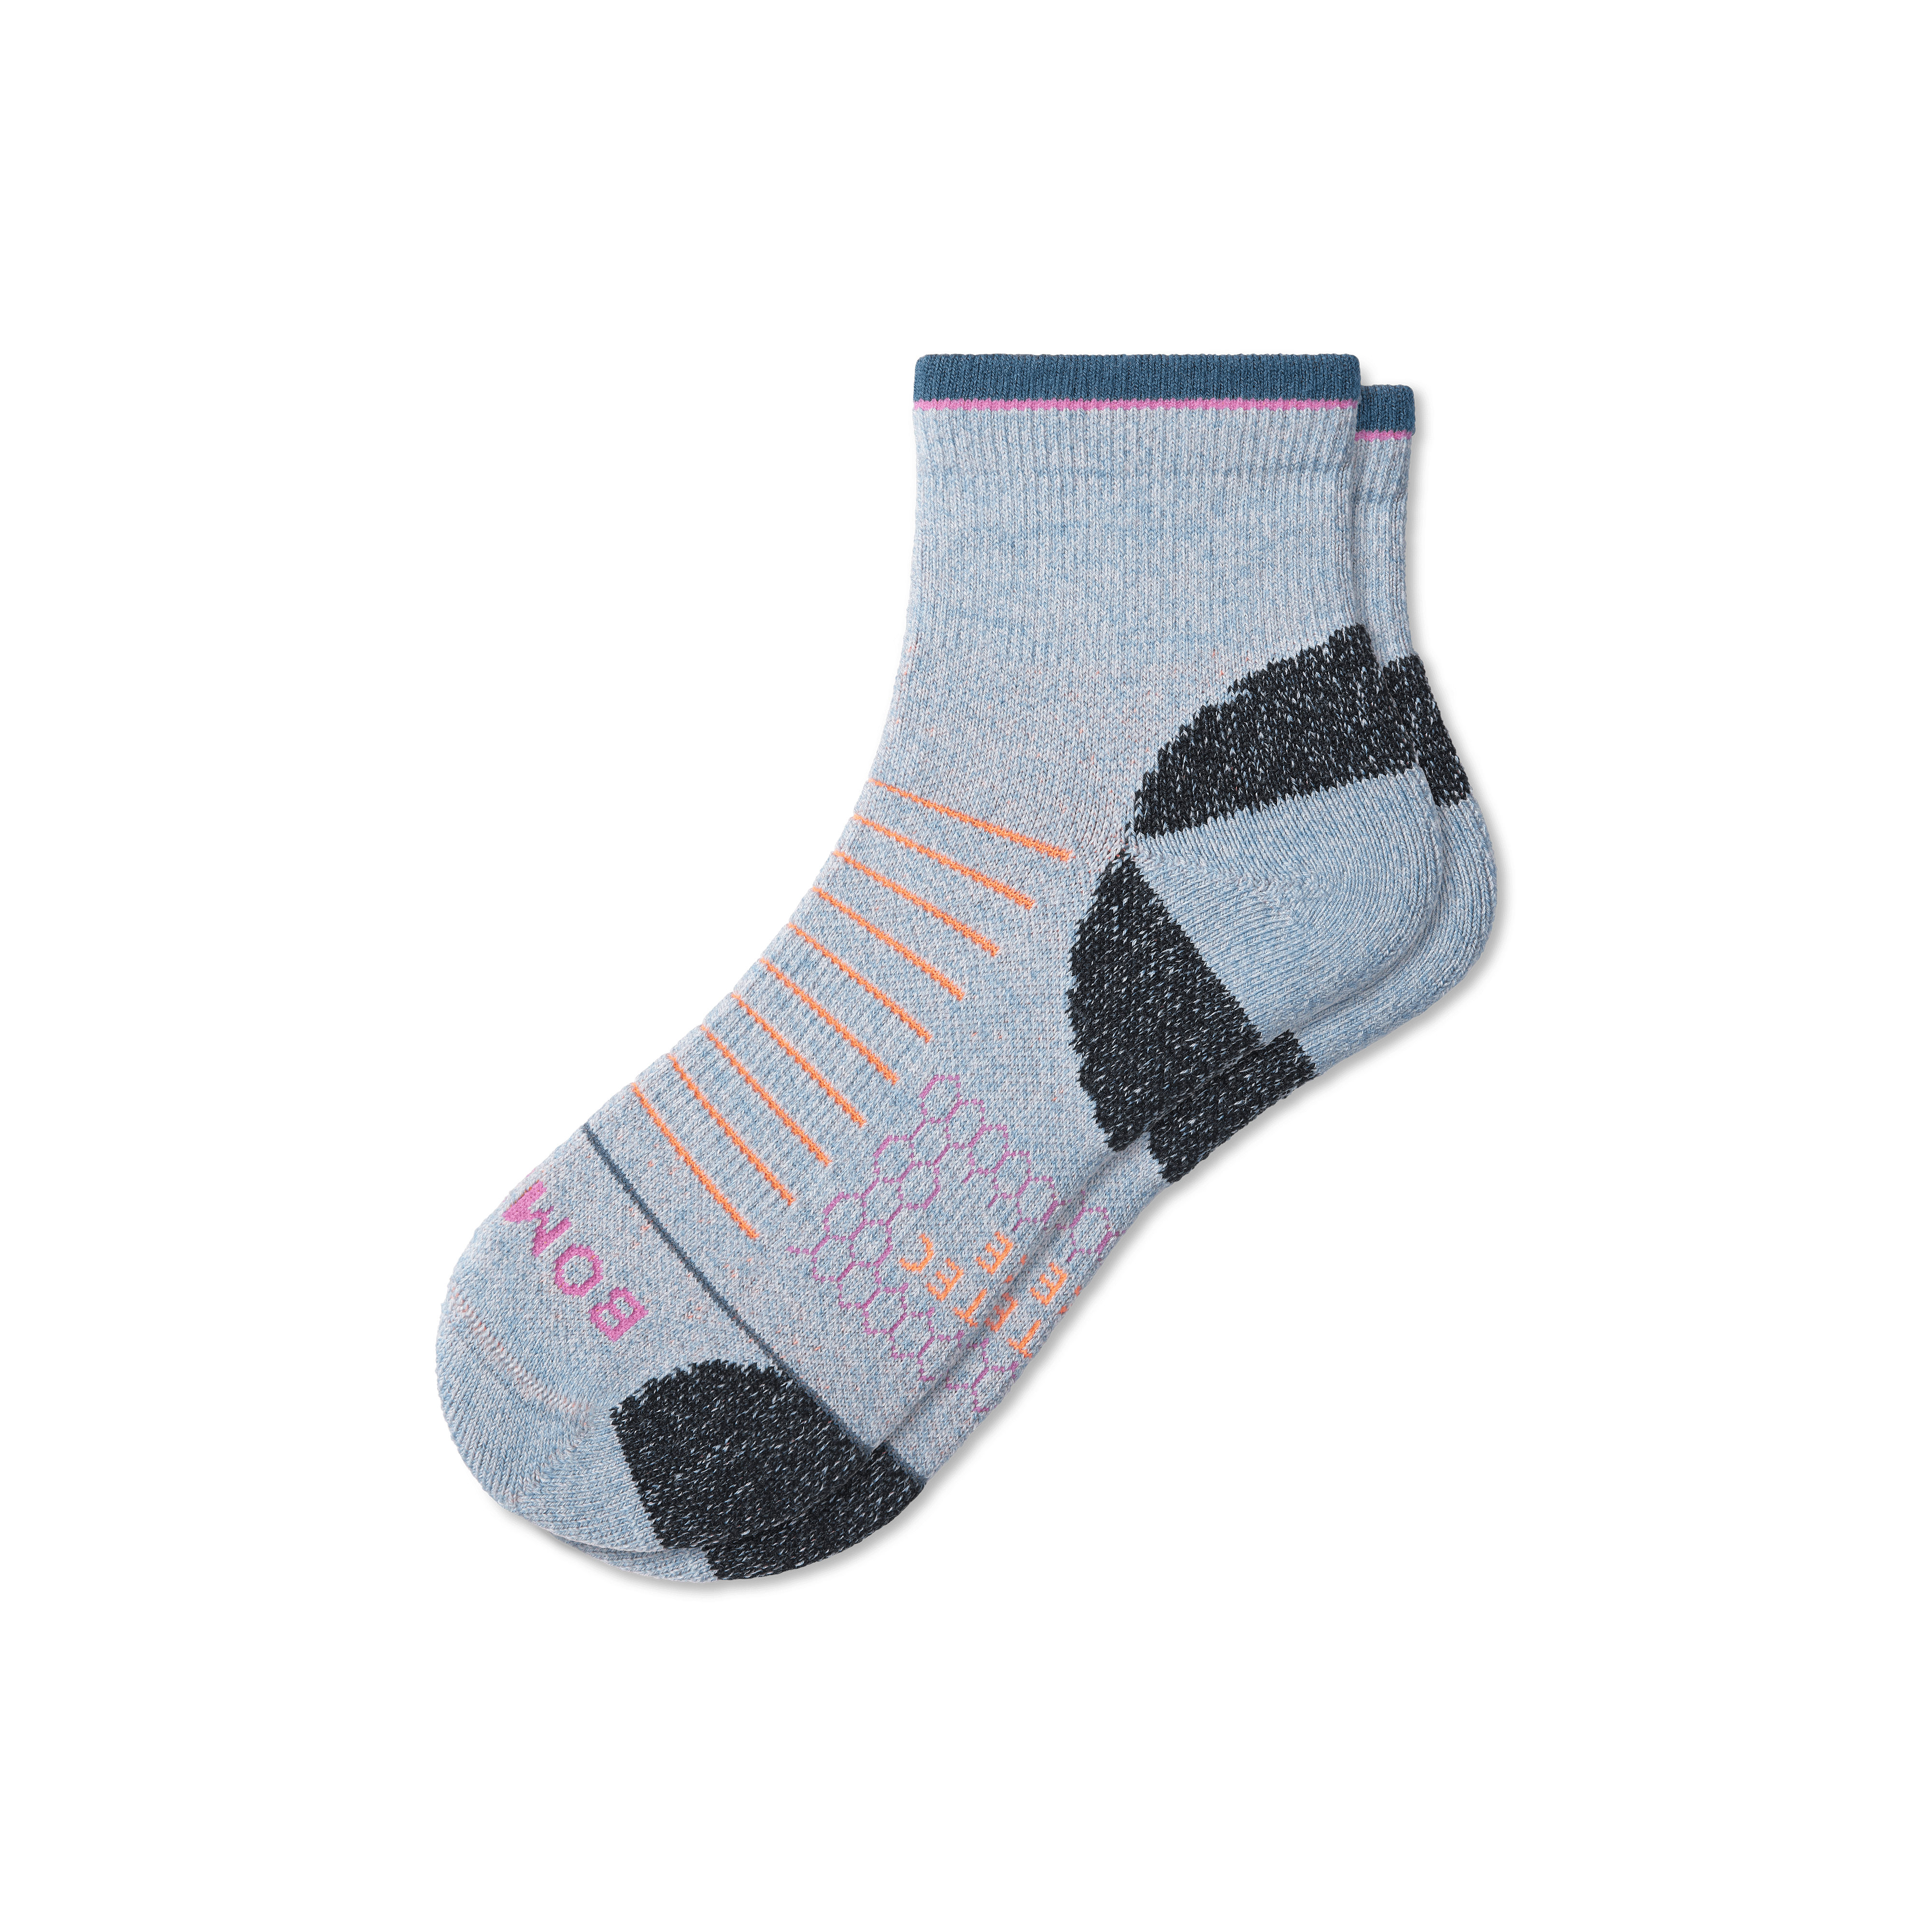 Bombas Merino Wool Blend Hiking Performance Quarter Socks In Ocean Fog